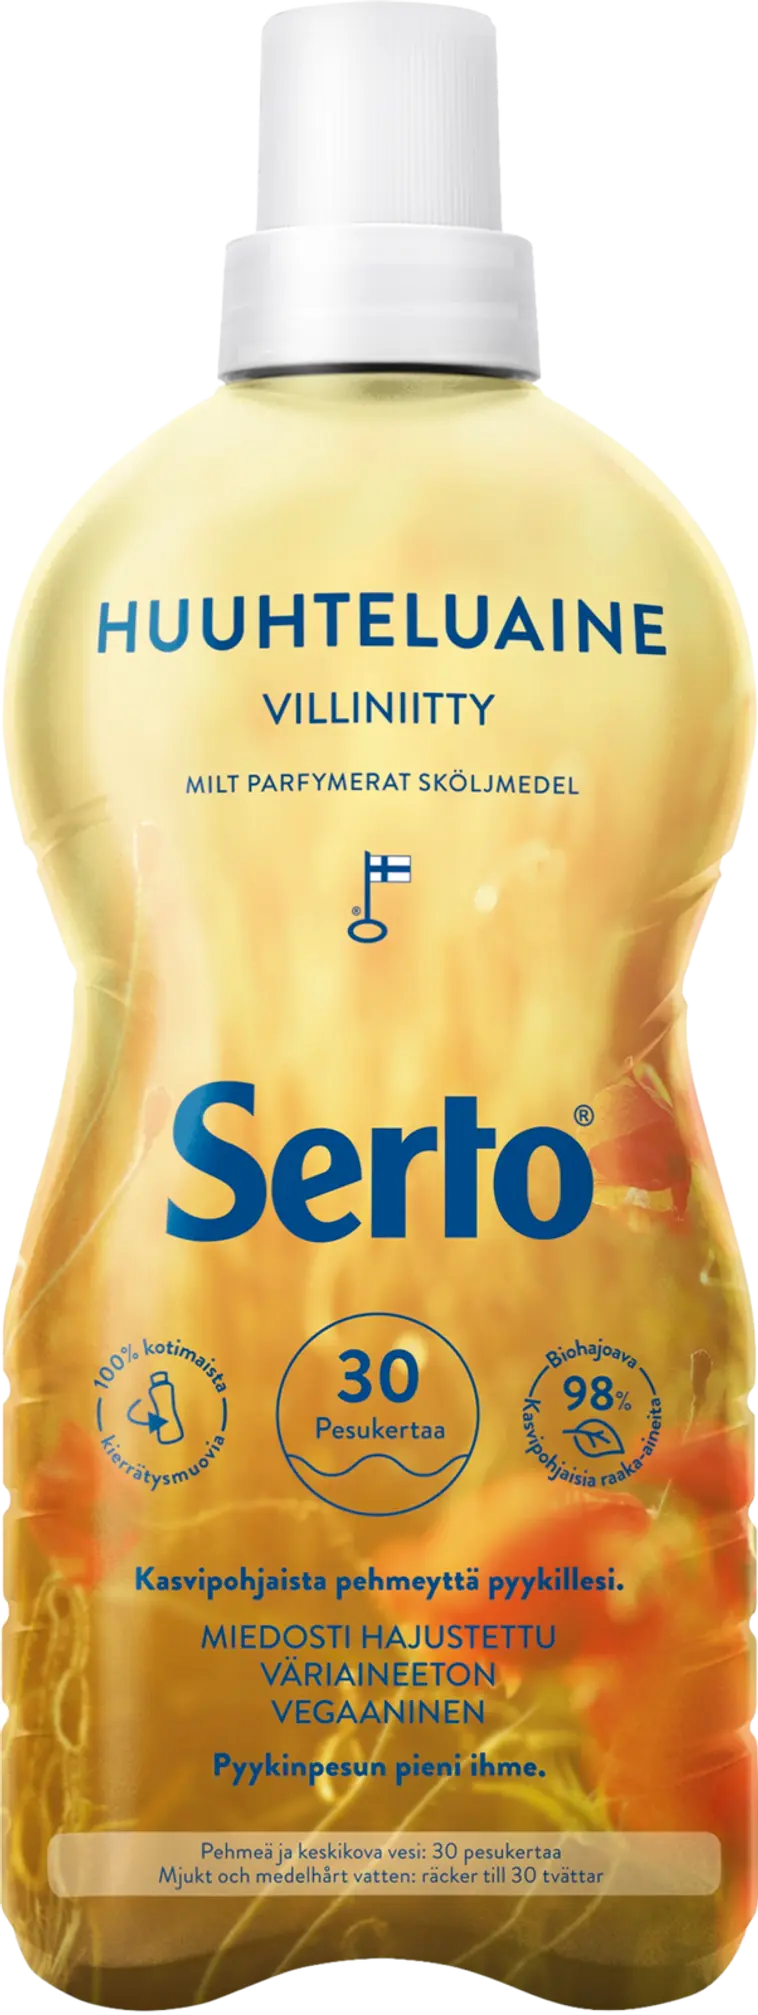 Serto Villiniitty huuhteluaine 750 ml